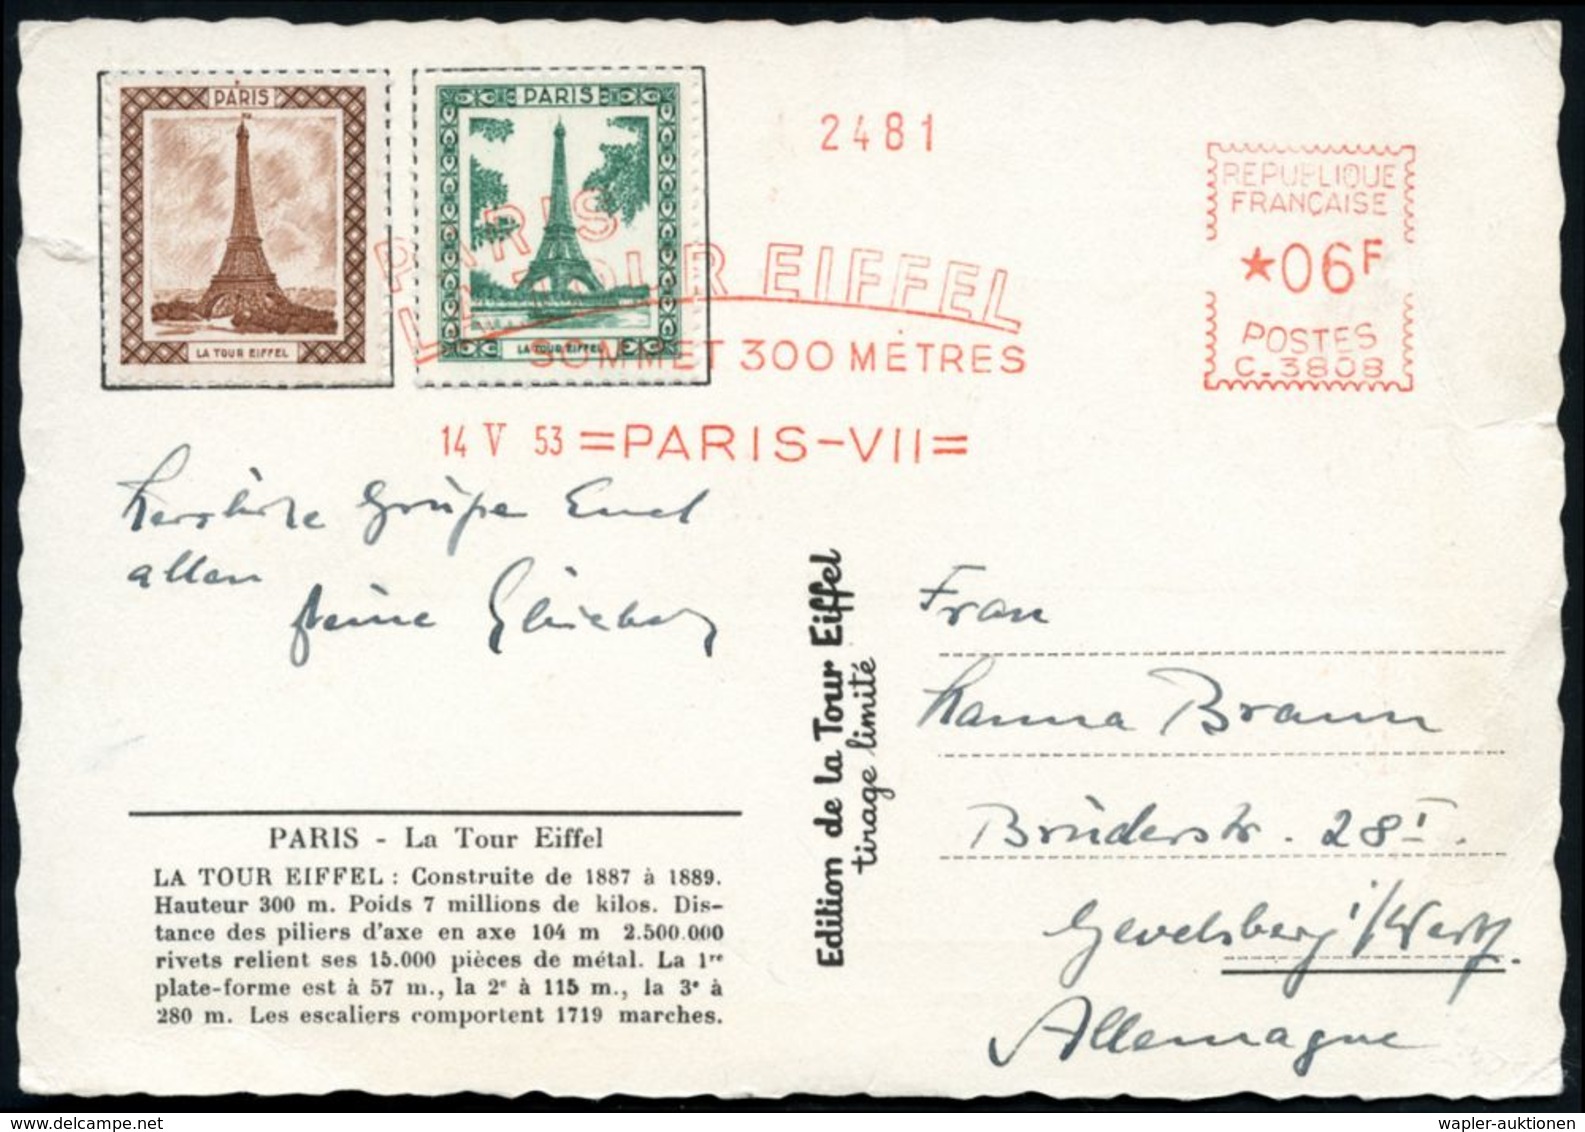 FRANKREICH 1953 (14.5.) AFS.: PARIS-VII/C.3808/PARIS/TOUR EIFFEL/SOMMET 300 METRES Auf 2 Eiffel-Turm-Vignetten + Rs. Wei - Monumentos